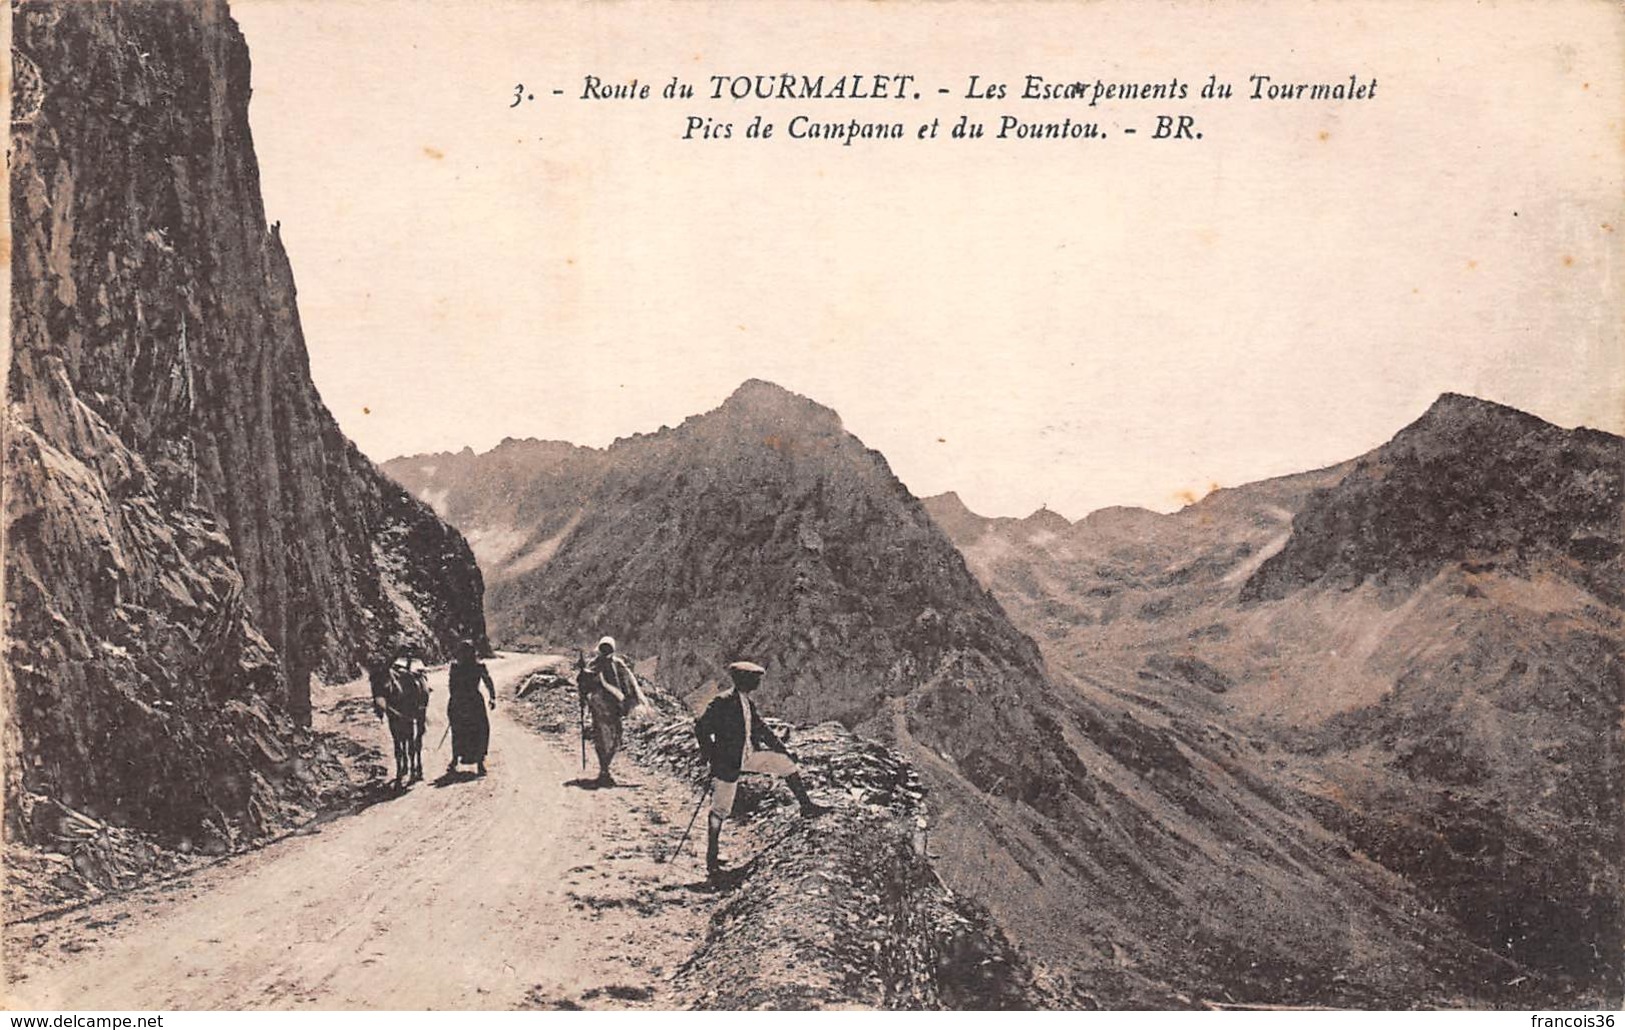 Lot de 51 CPA du Col du Tourmalet près Bagnères de Bigorre (65) - Très bon état